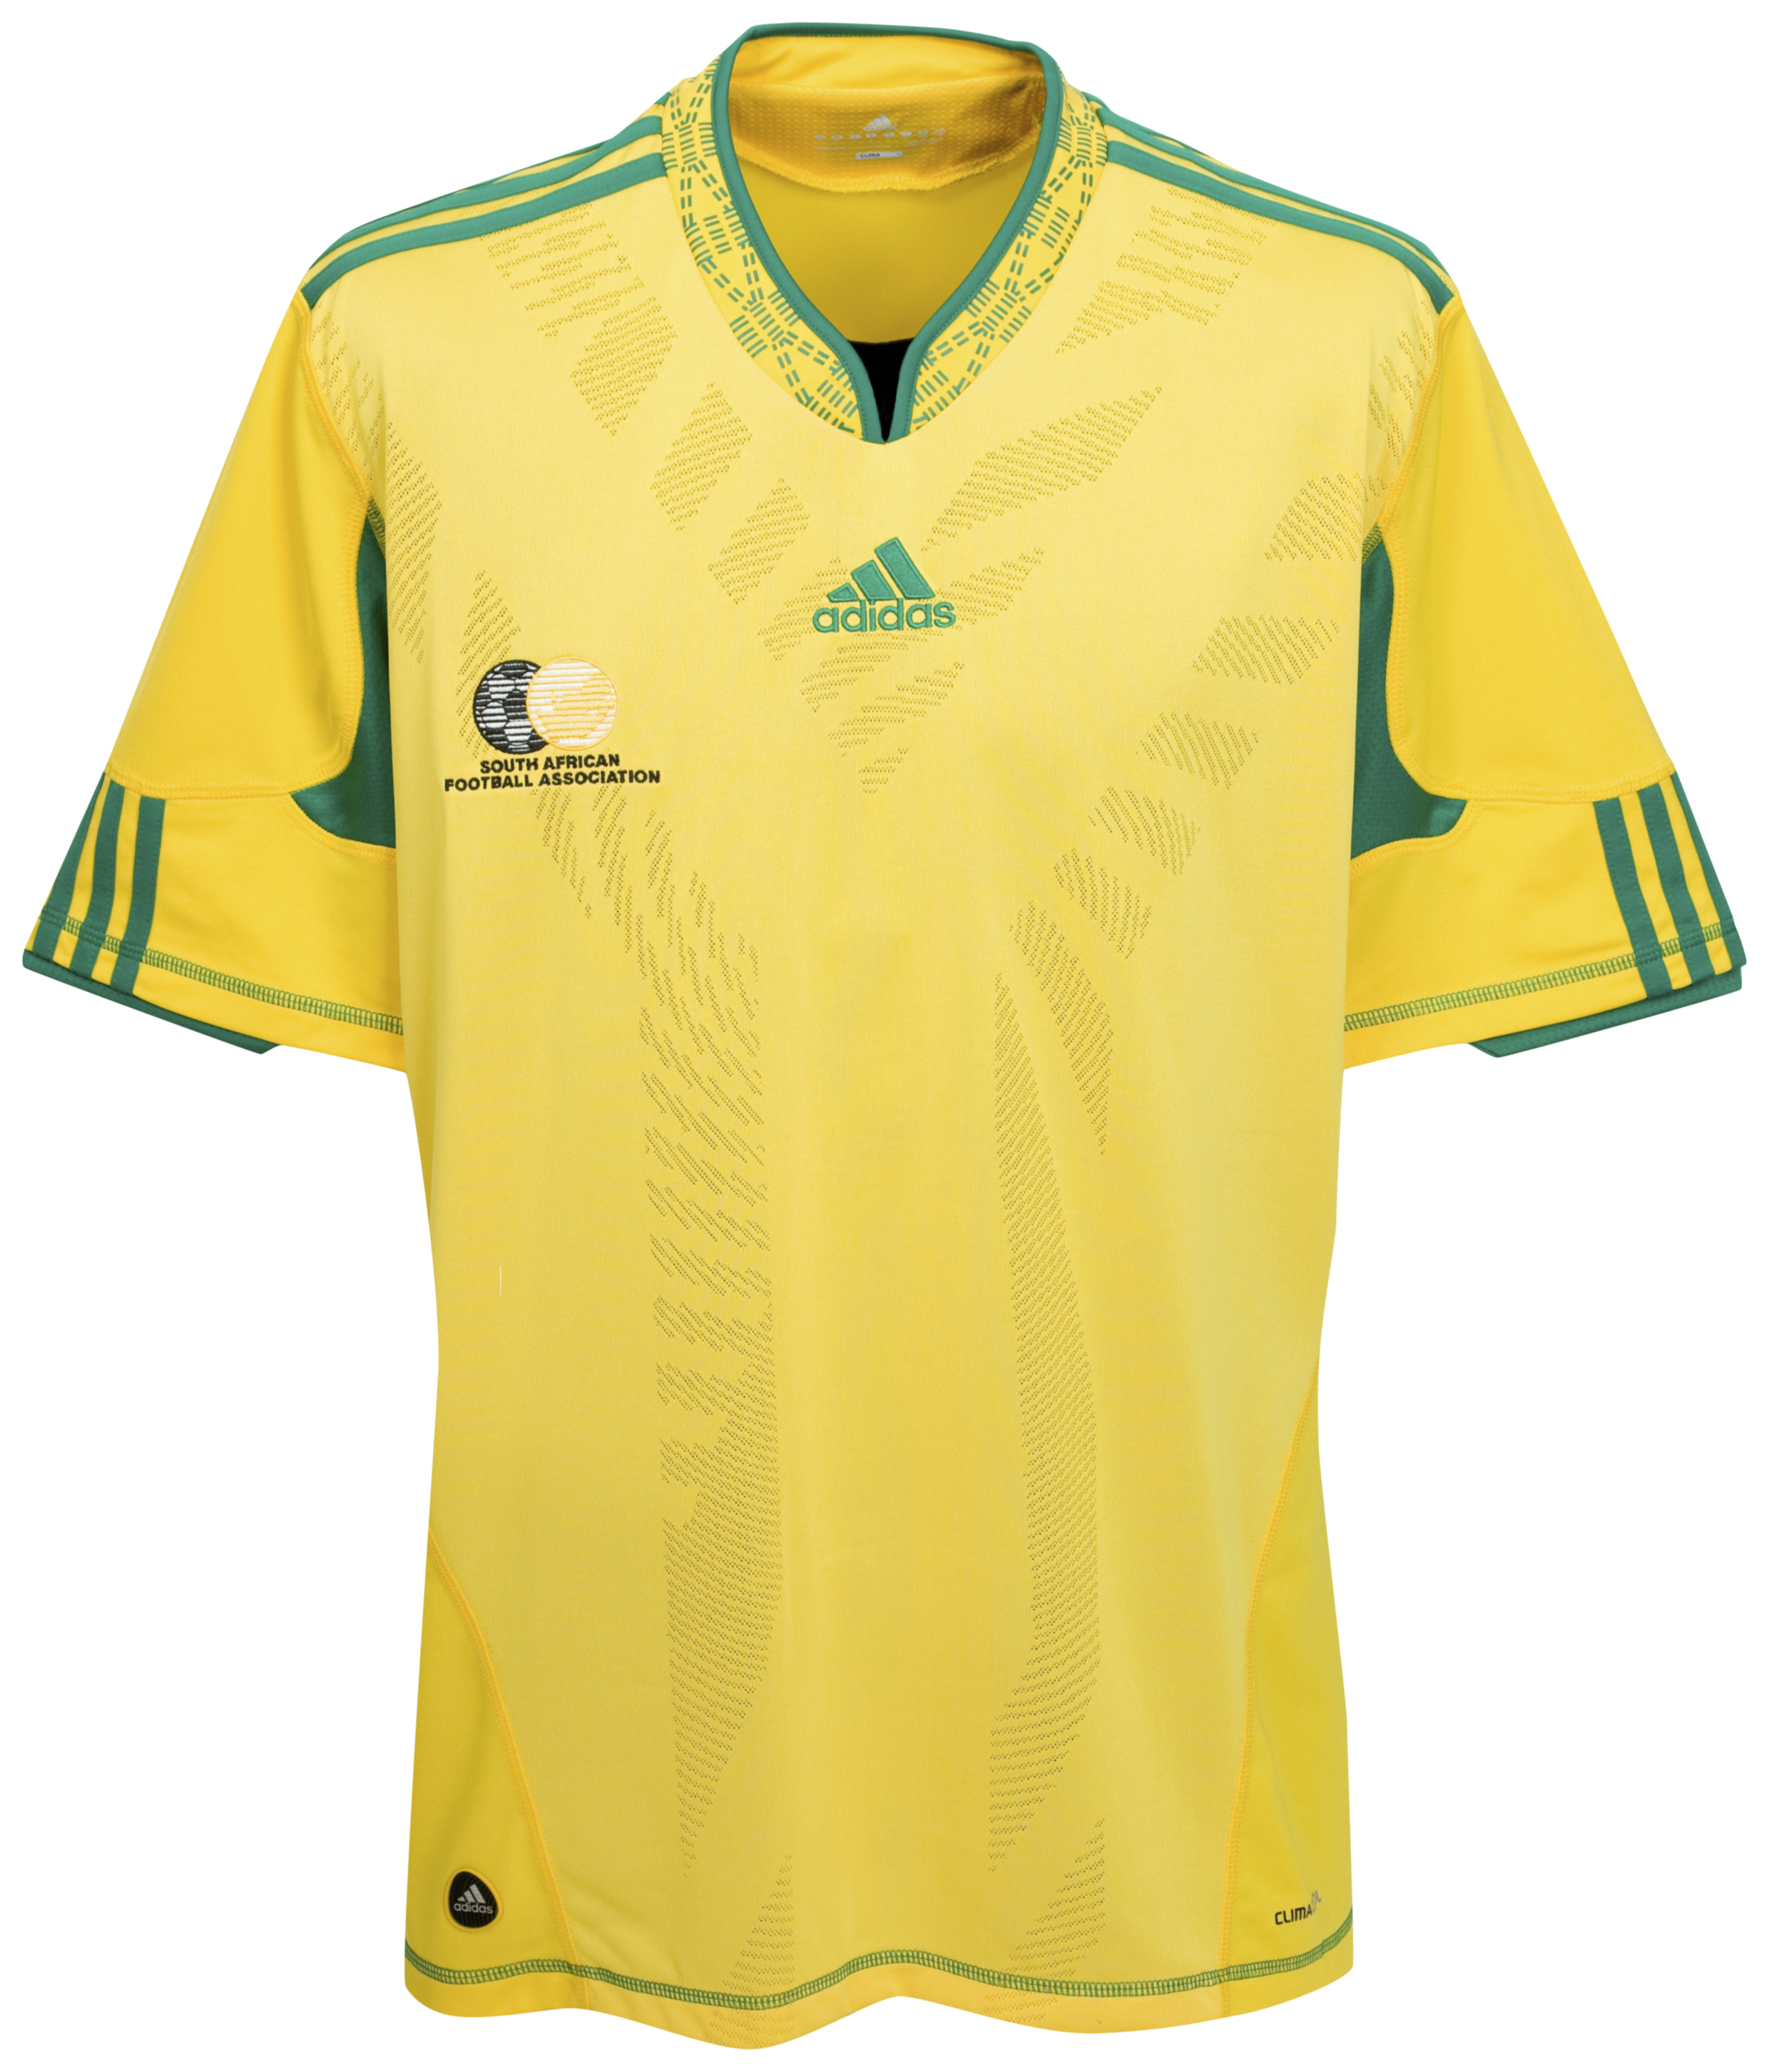 الملابس الخاصة بالمنتخبات في كأس العالم (جنوب أفريقيا 2010) Kb-63750